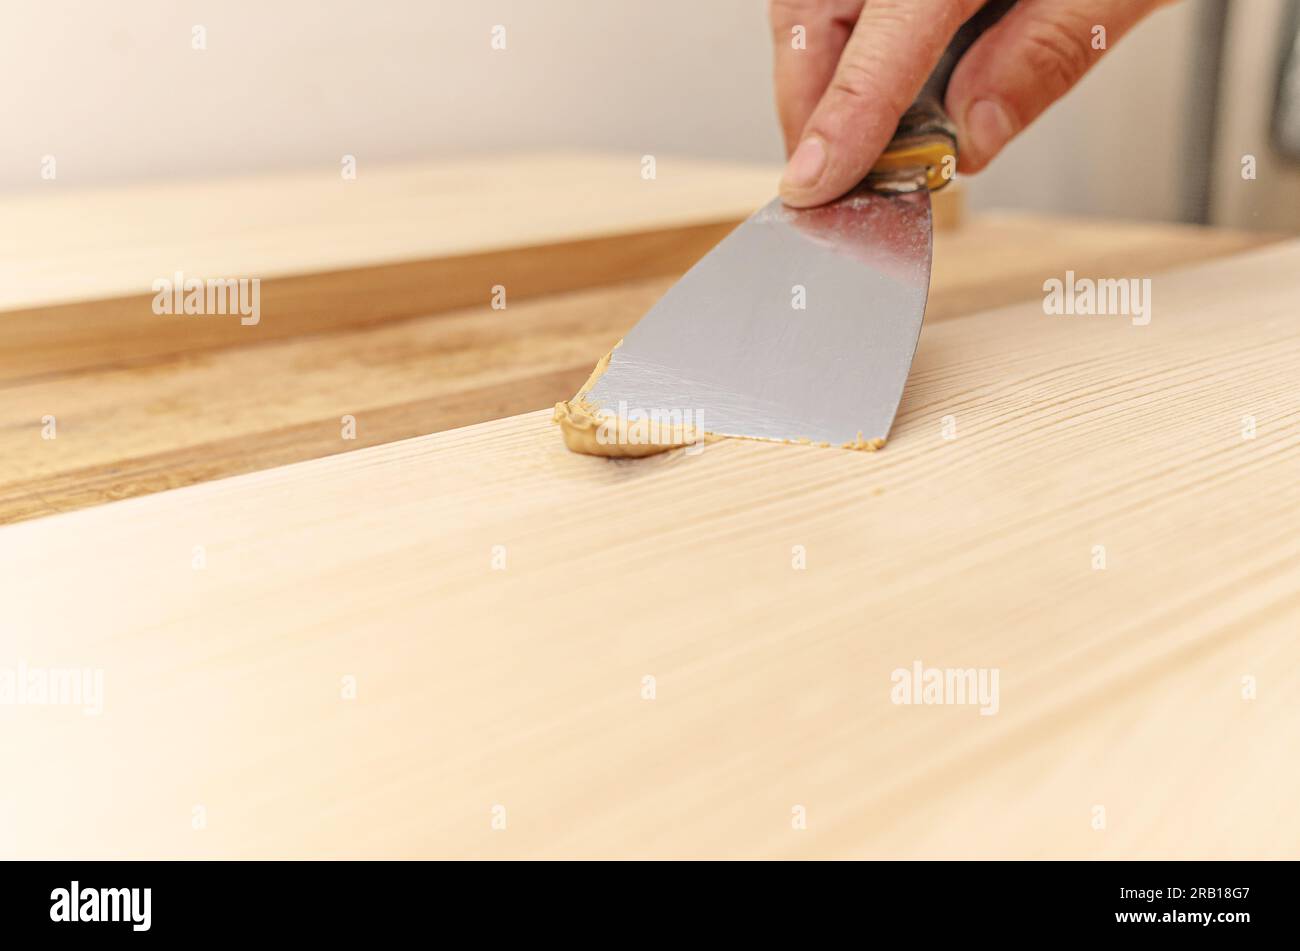 Couvrir les nœuds sur une planche de bois avec du mastic. Spatule, mastic, planche de bois. Les mains de Carpenter. Banque D'Images